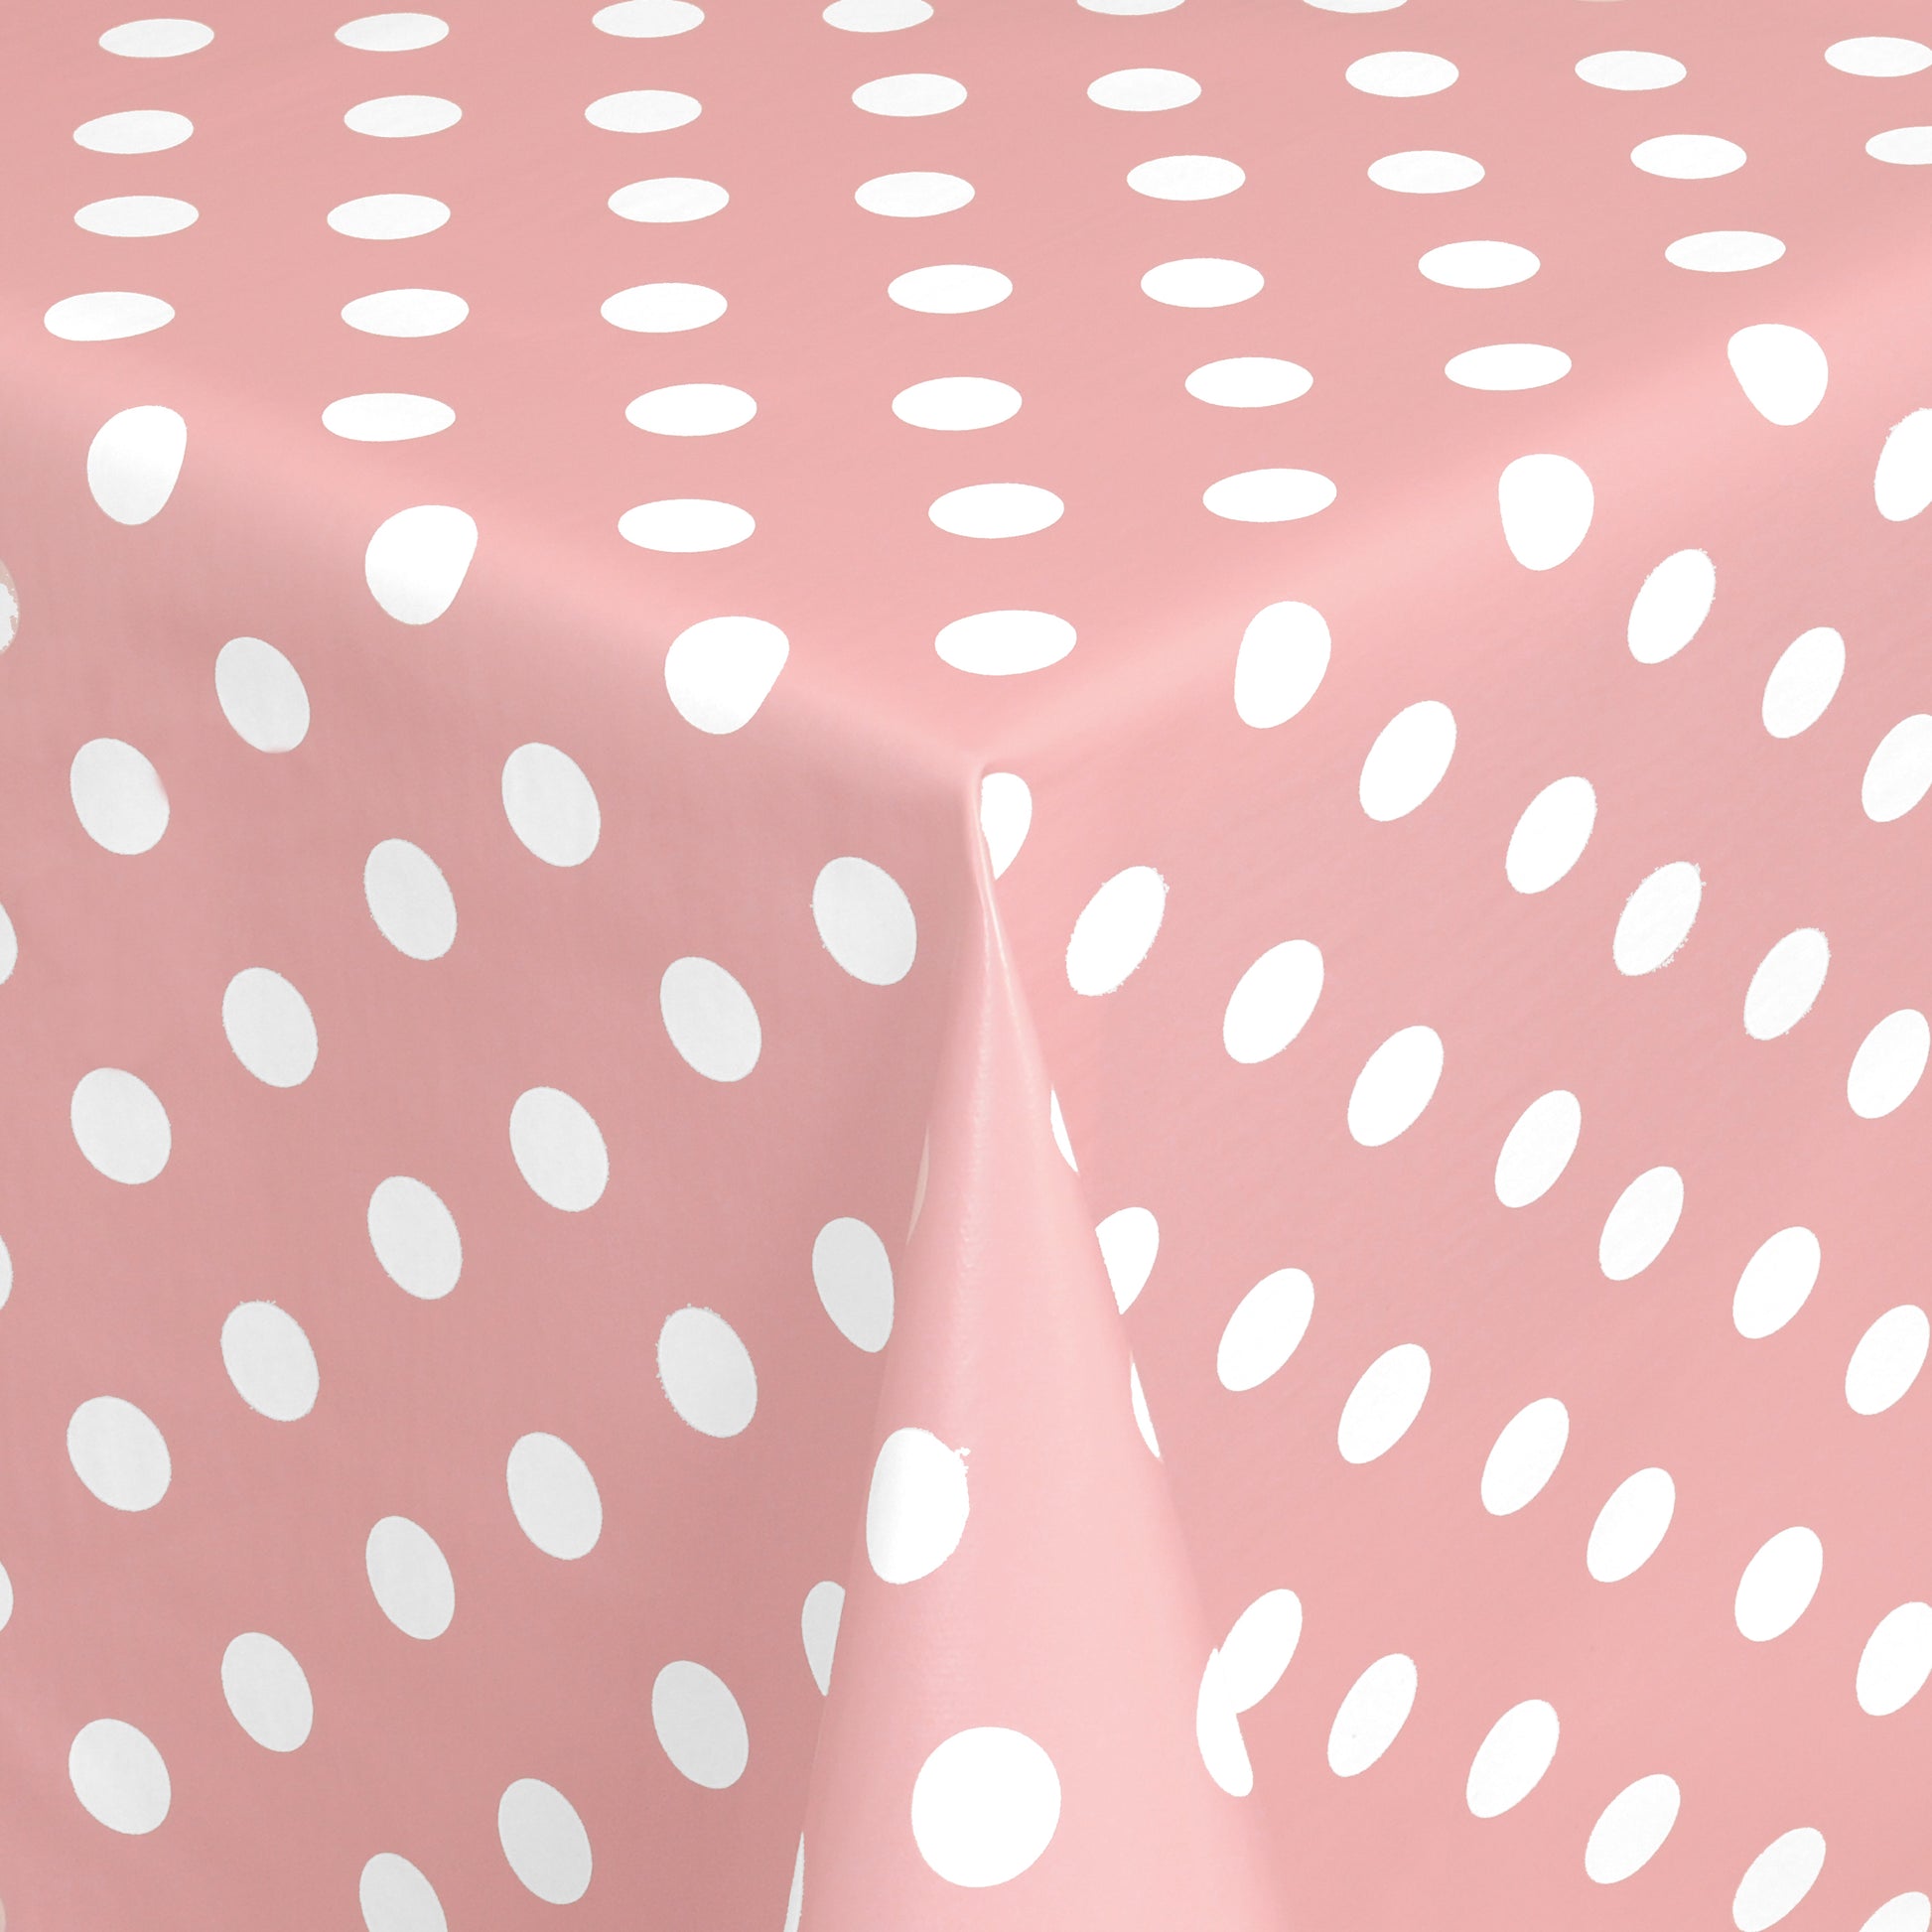 abwaschbare pvc Tischdecke Wachstuch Punkte rosa Polkda dots eckig rund oval